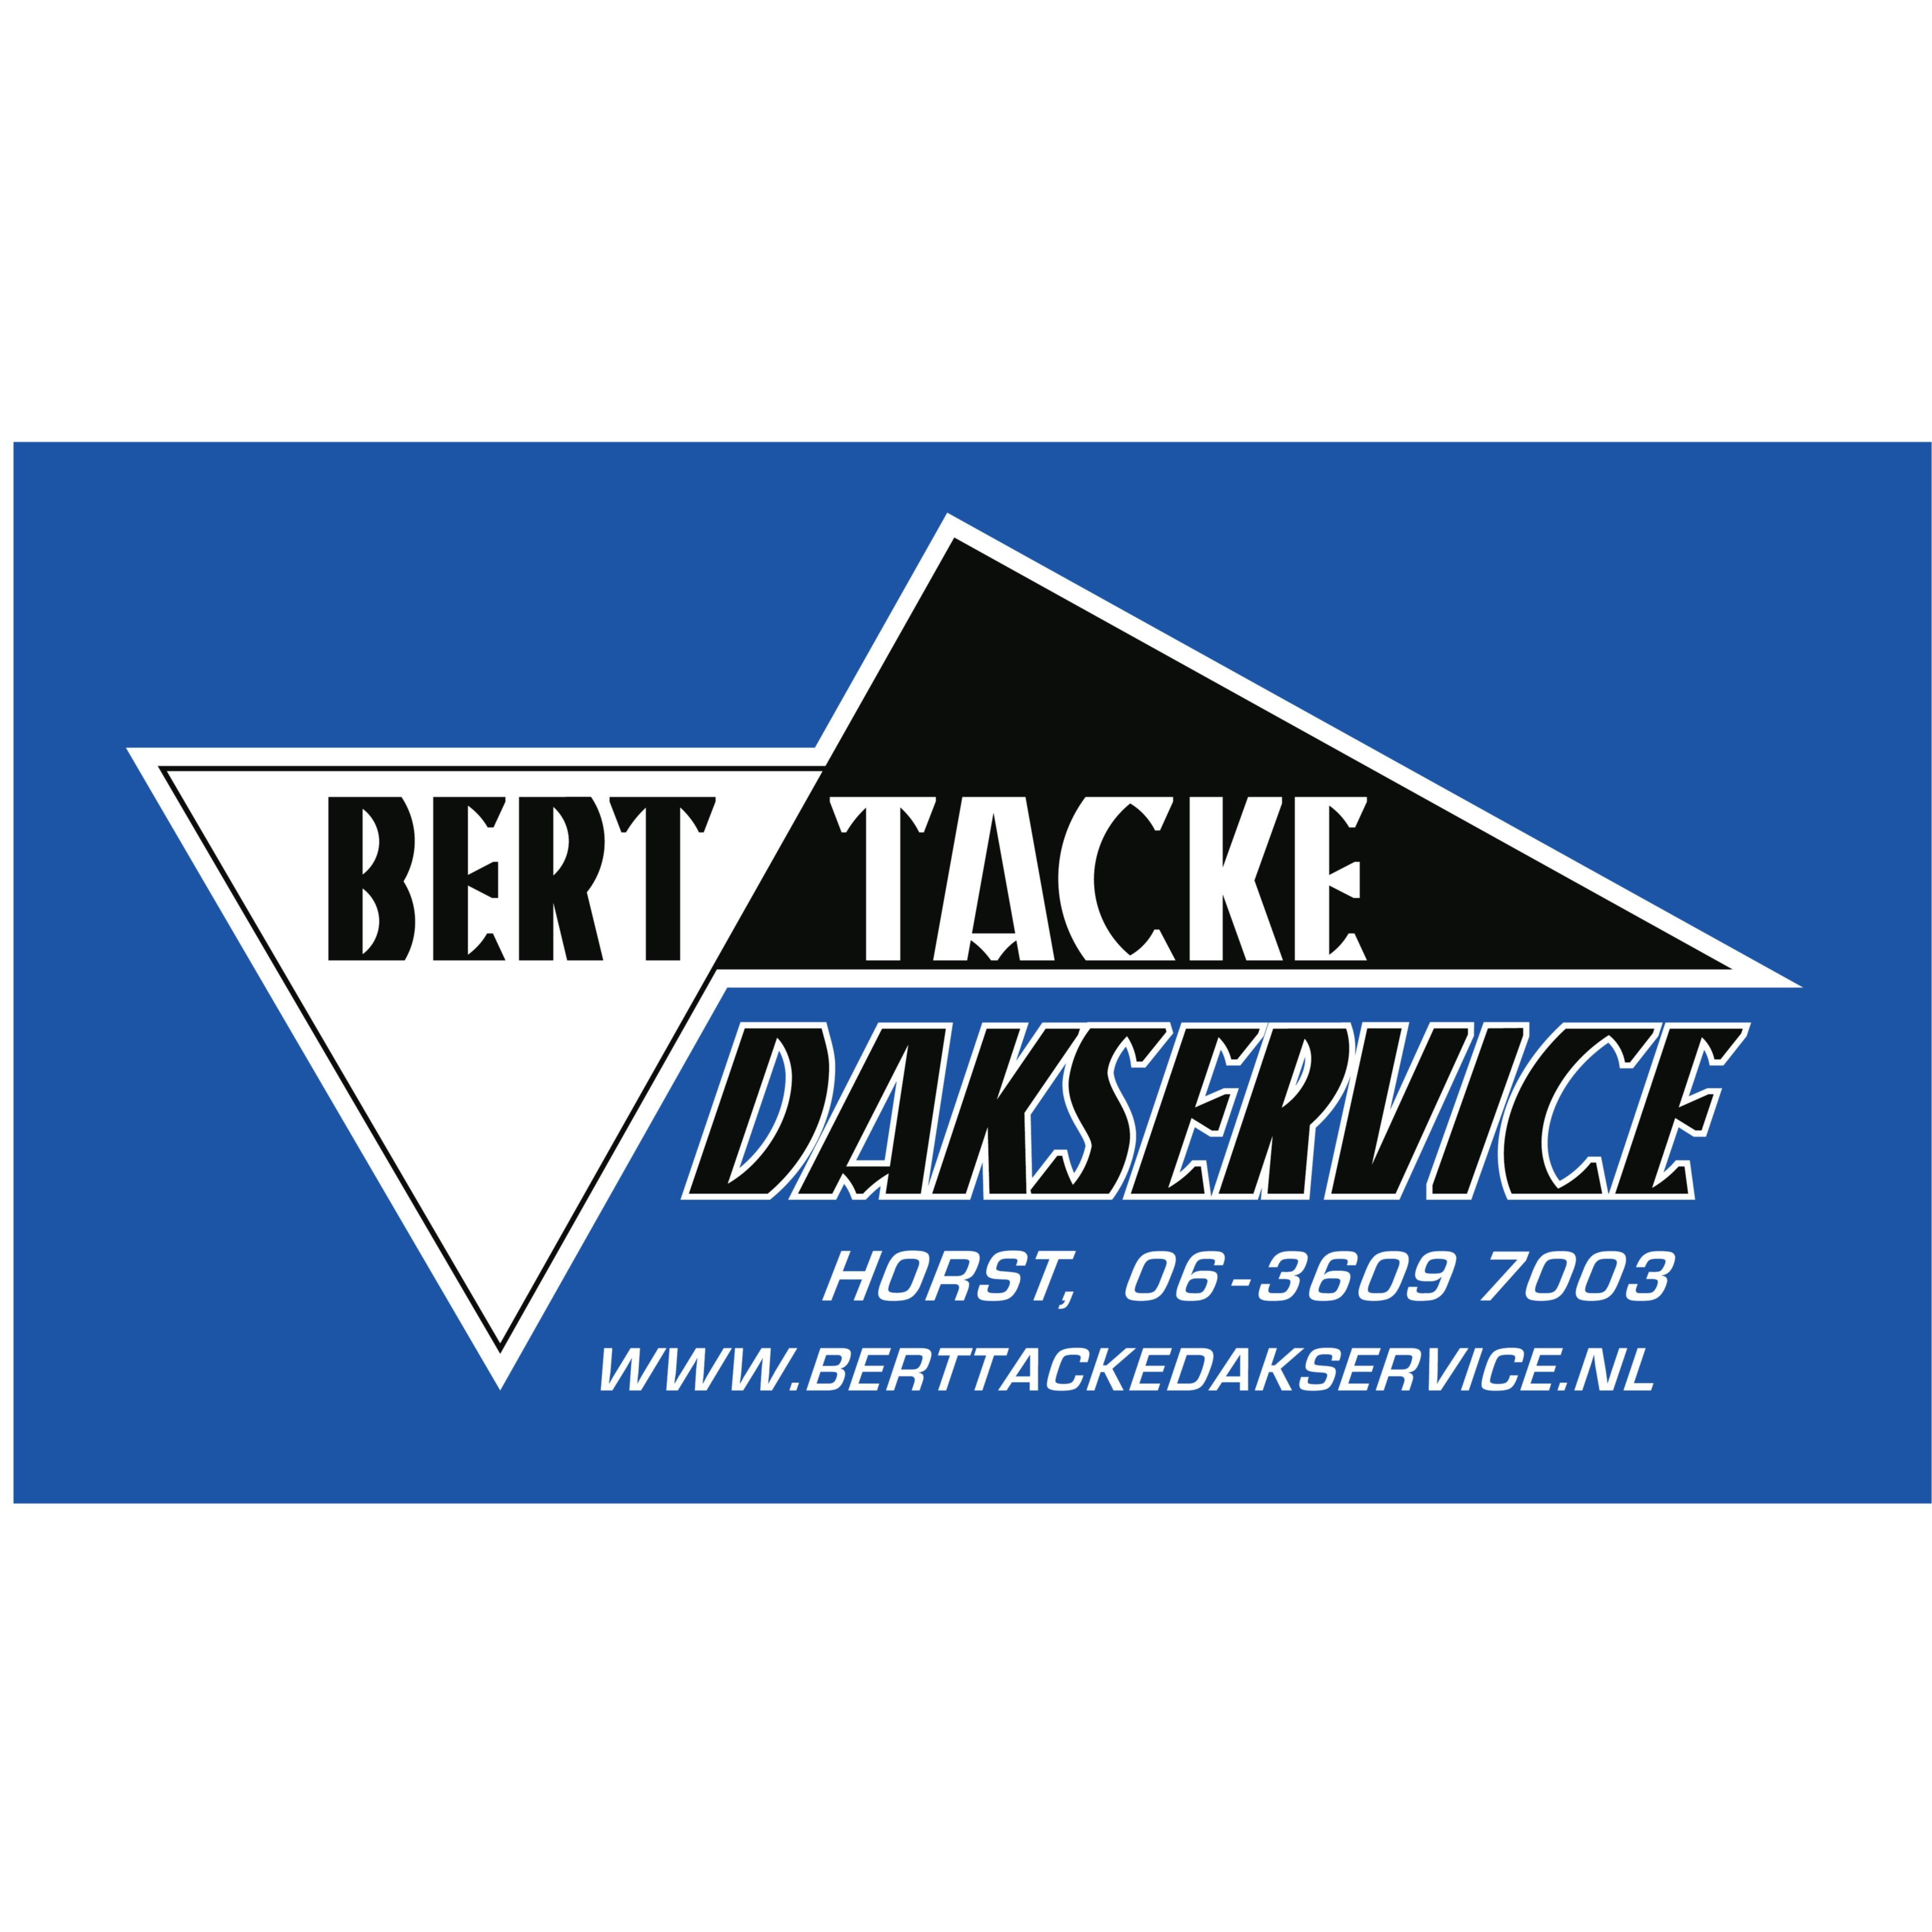 Tacke Dakservice Bert Logo